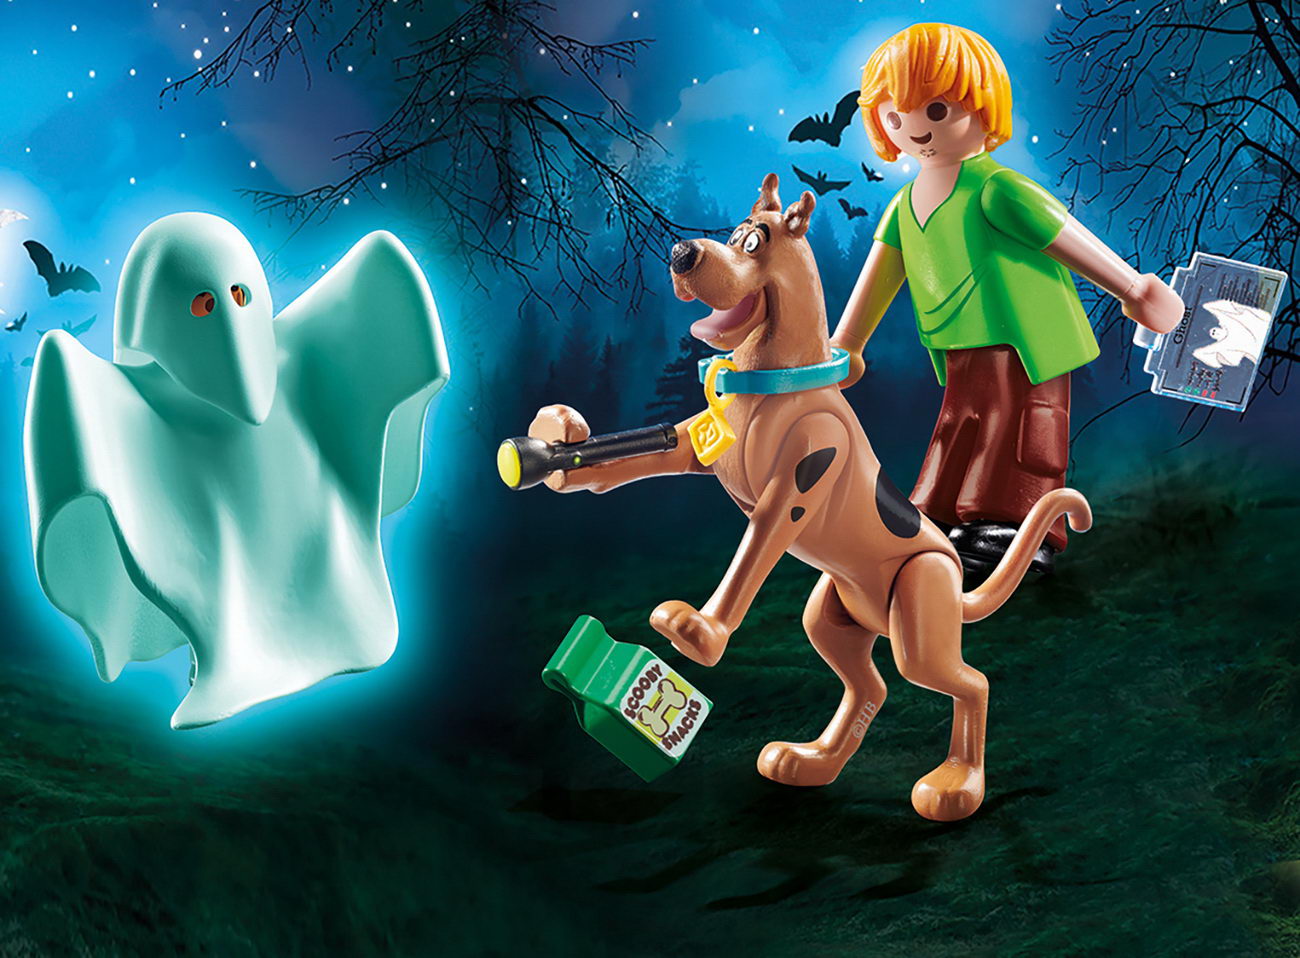 Playmobil 70287 - SCOOBY-DOO! Scooby & Shaggy mit Geist